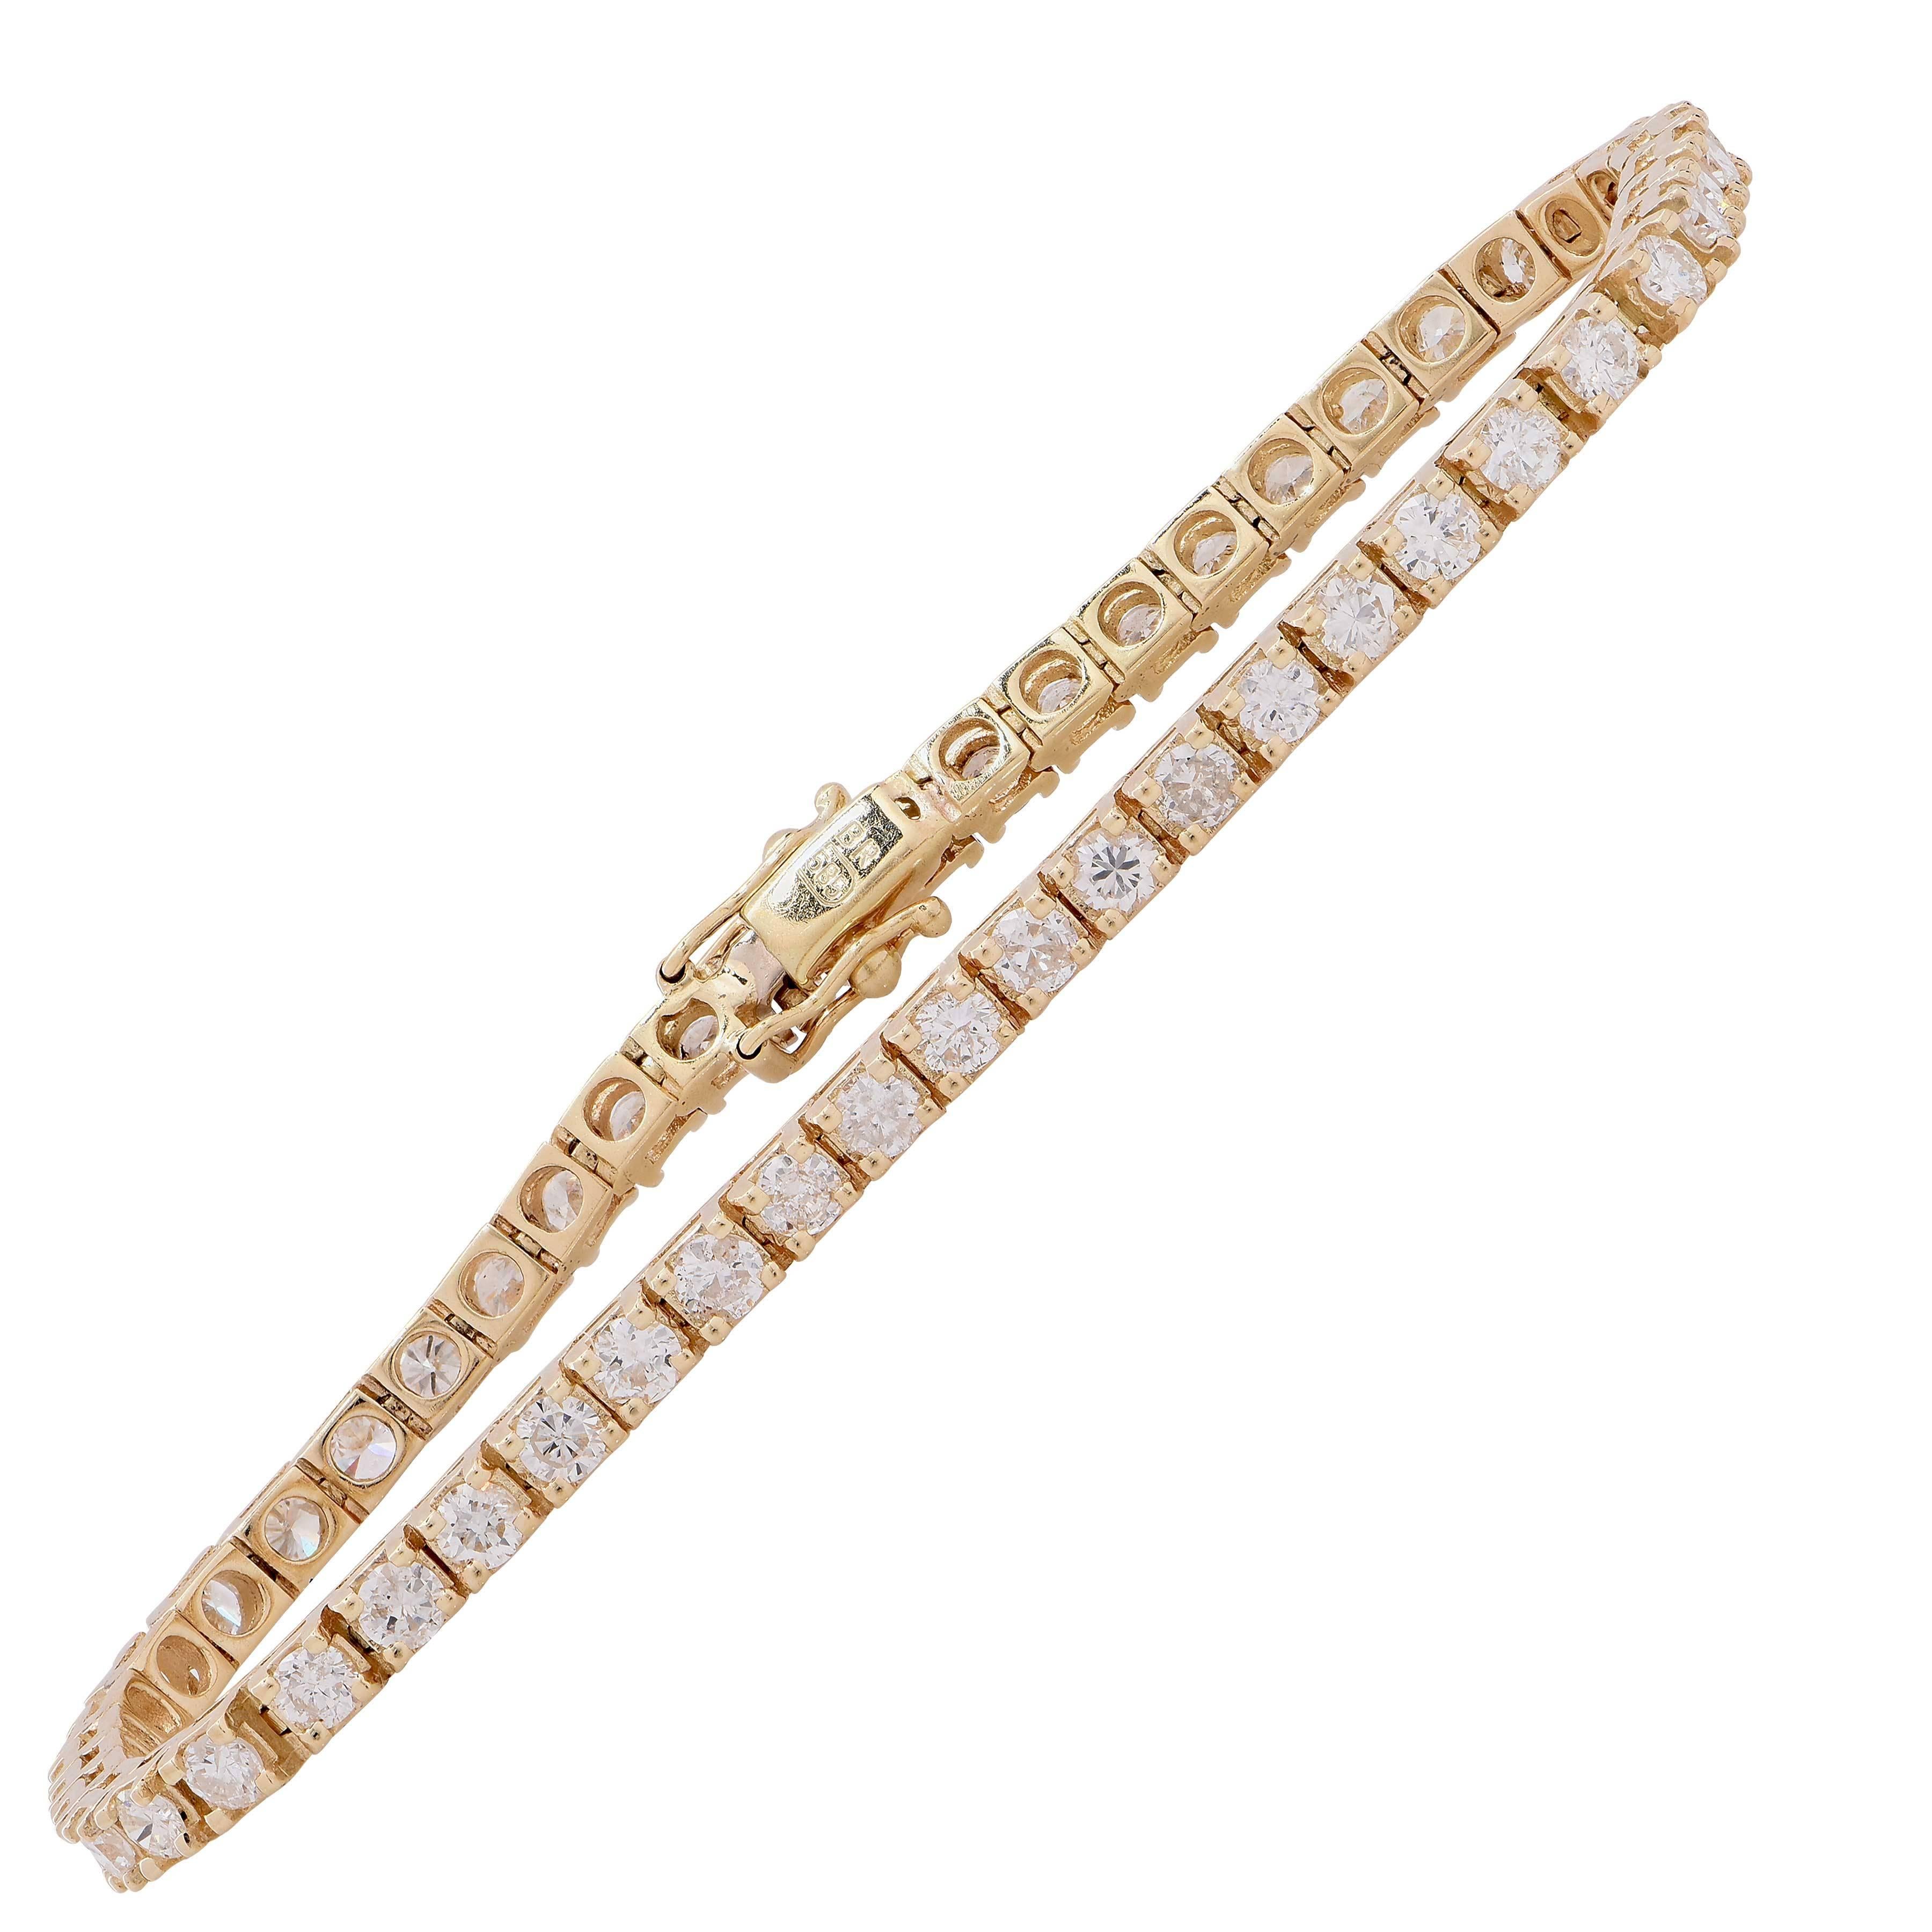 Bracelet tennis à griffes en or jaune serti de diamants de 5 carats